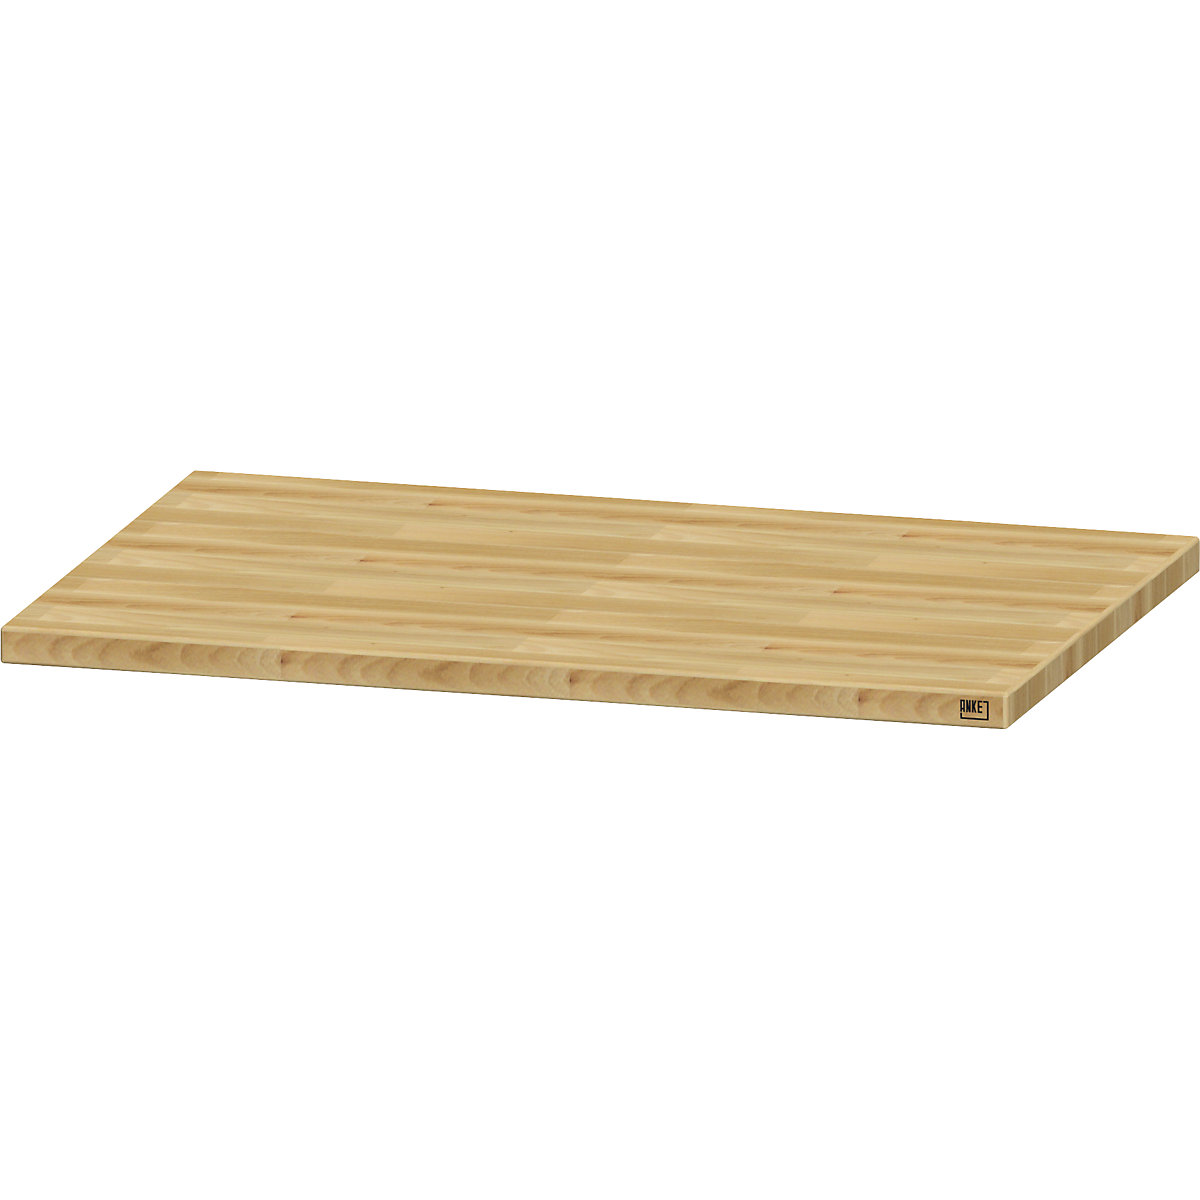 Fabricación de un escritorio esquinero a medida con tablero de madera maciza